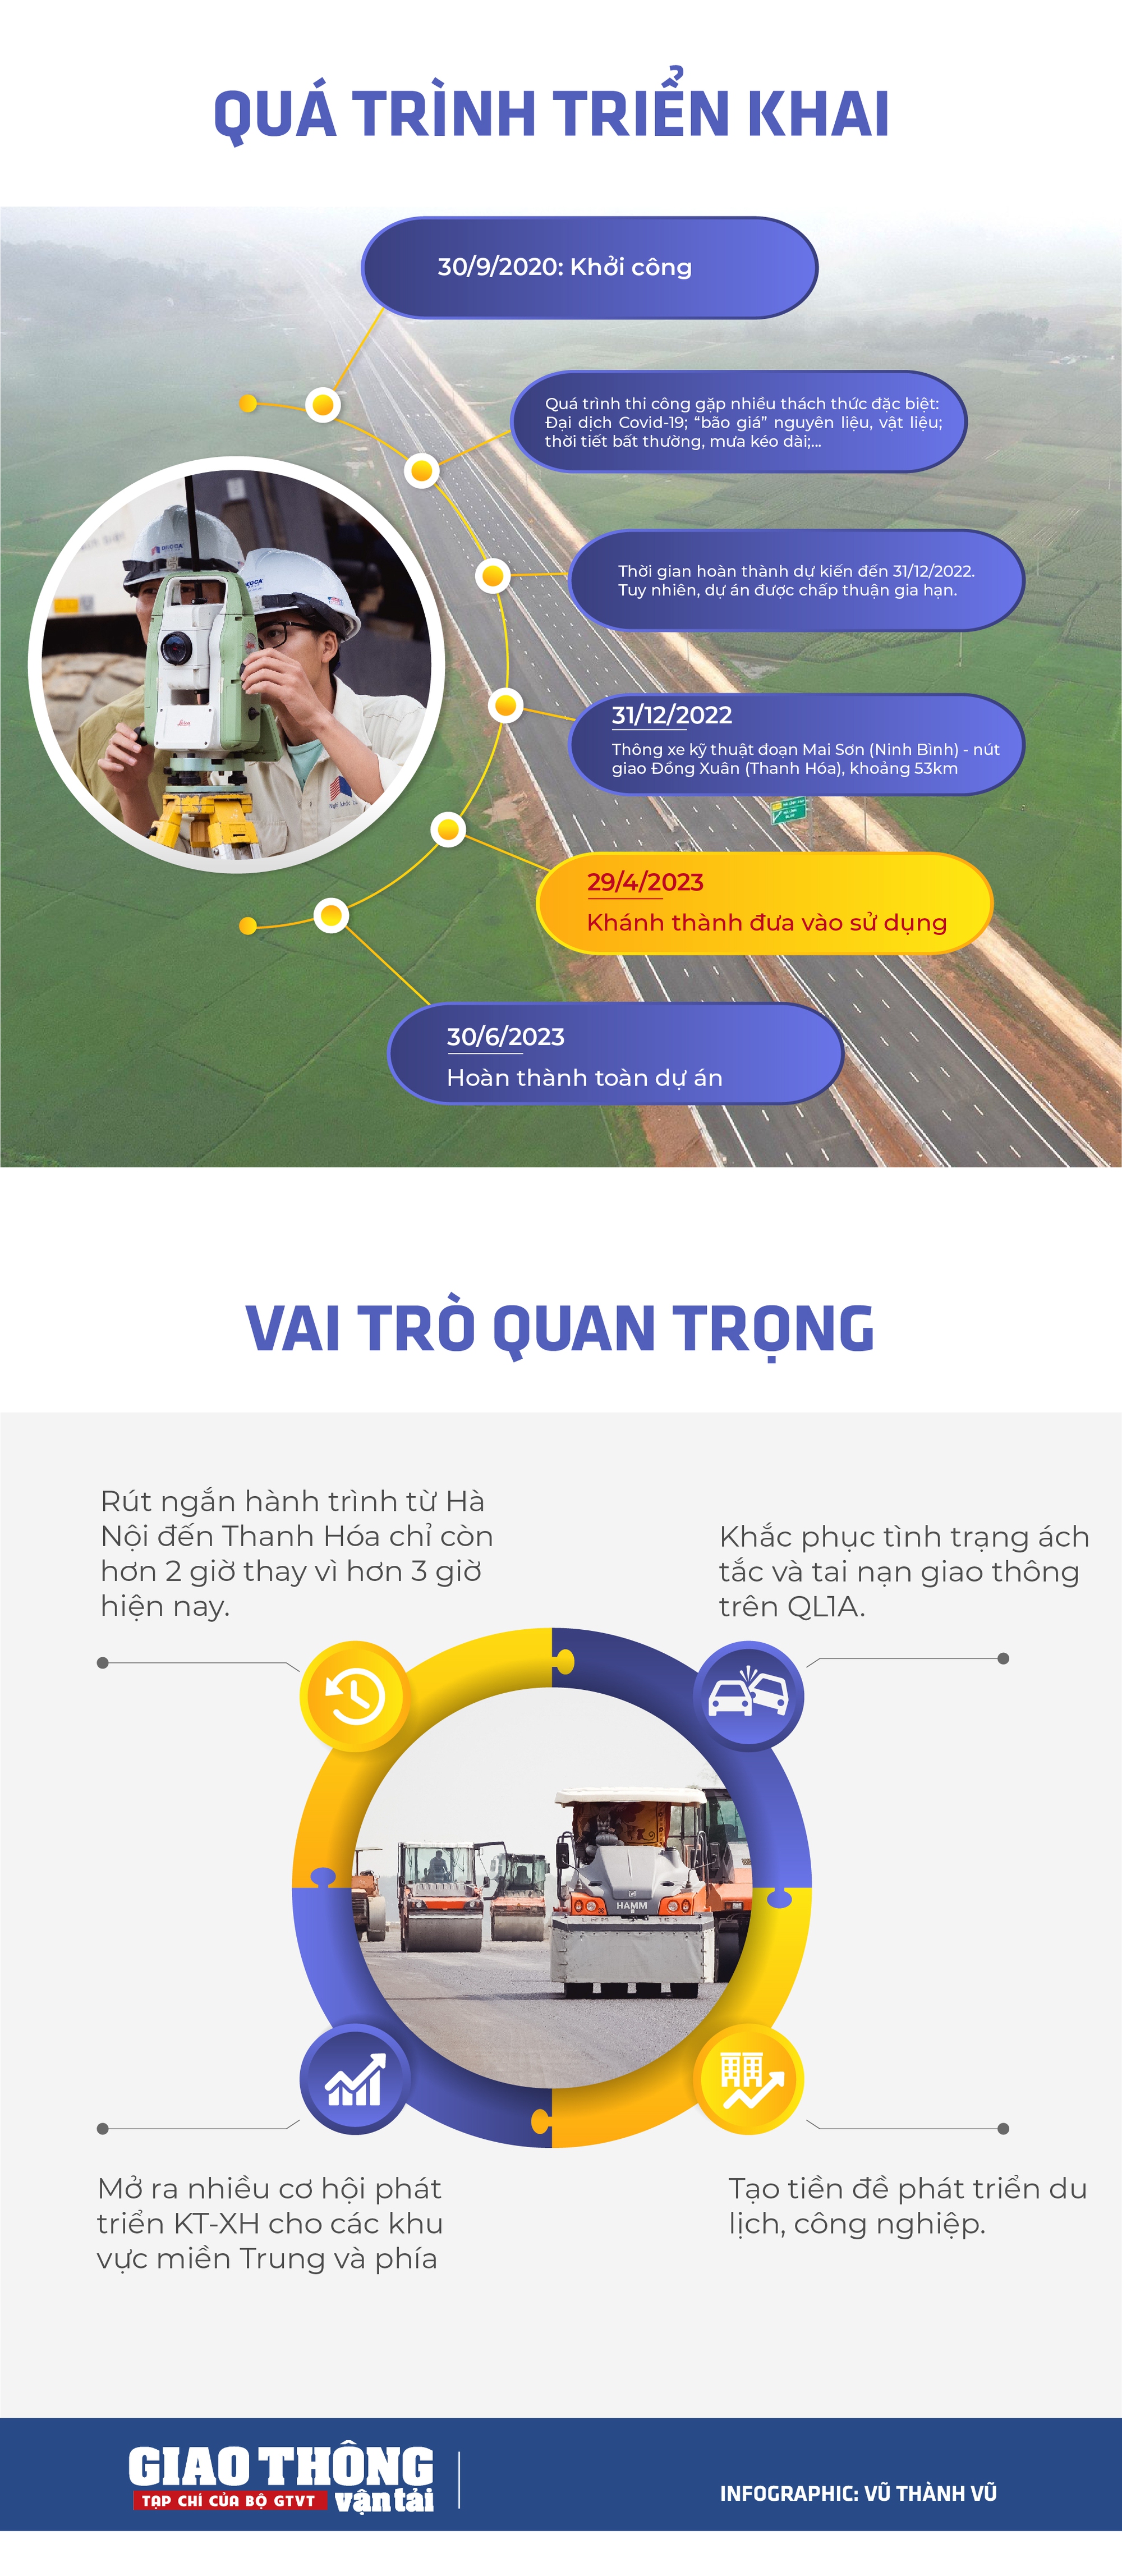 INFOGRAPHIC: Cao tốc Mai Sơn - QL45 chuẩn bị thông xe, từ Hà Nội đi Thanh Hóa chỉ hơn 2 tiếng - Ảnh 2.